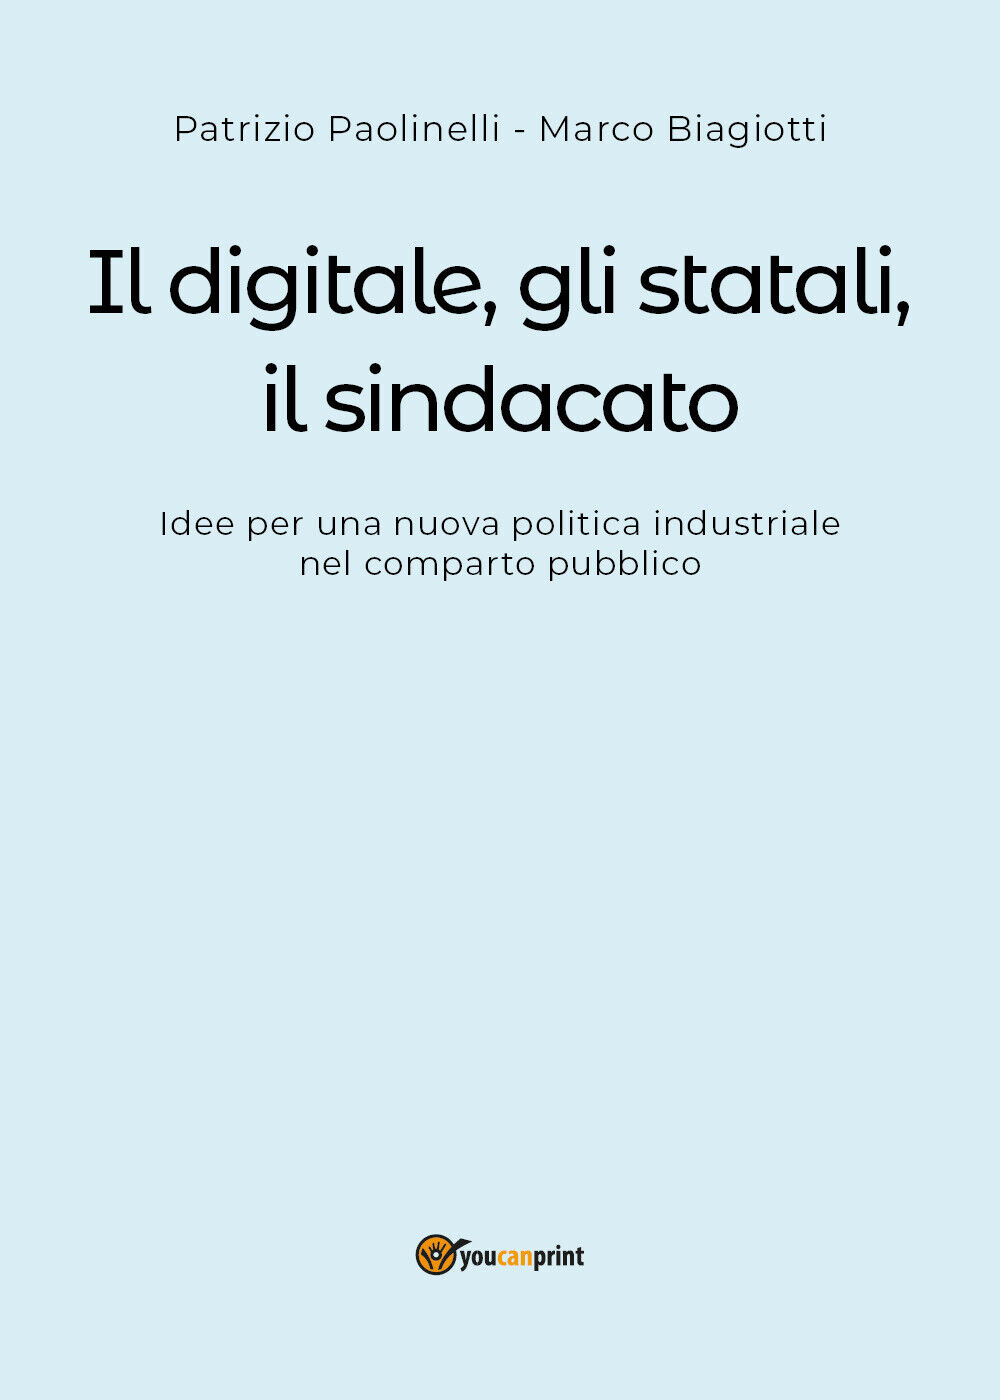 Il digitale, gli statali, il sindacato - Paolinelli, Biagiotti,  2018,  Youcanpr libro usato